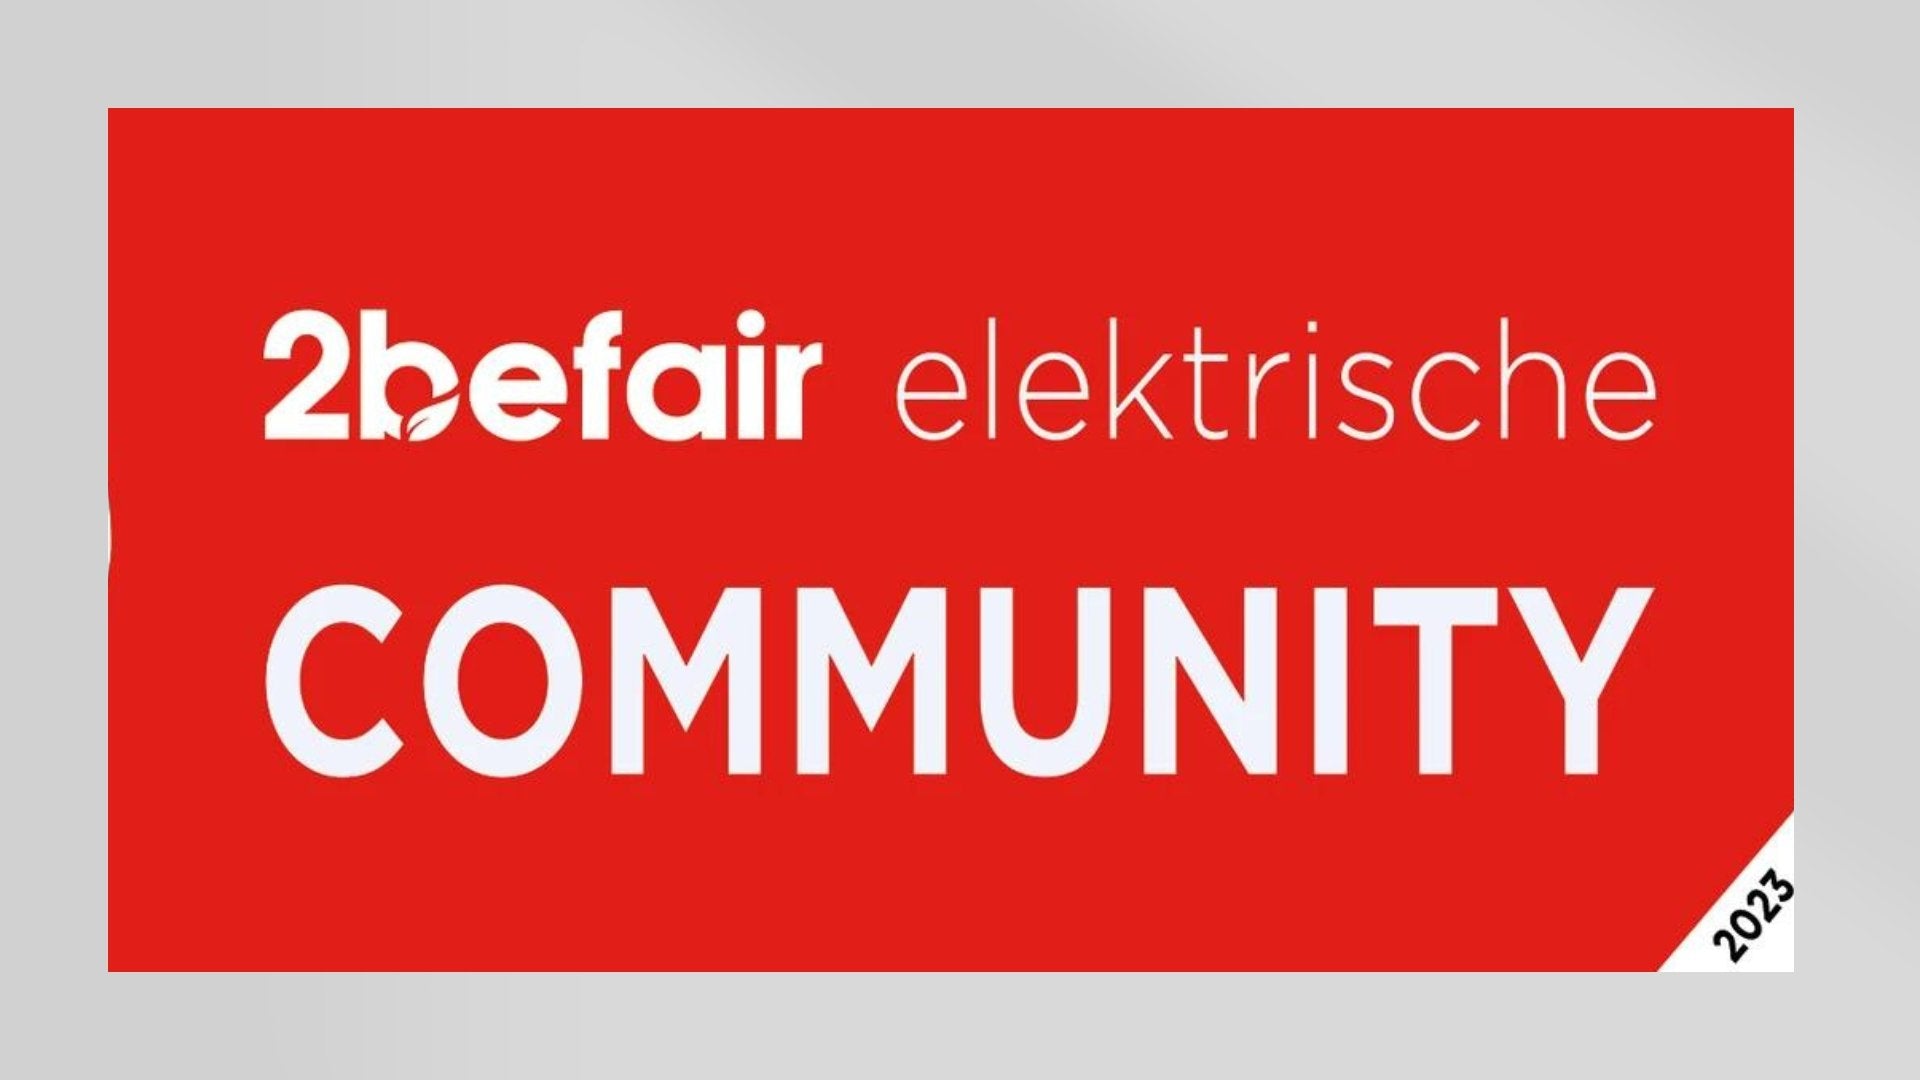 Das größte Elektroauto-Treffen der Welt! 2befair elektrische Community am 23.09.23 in Hamm - Wir sind dabei! - Shop4Tesla